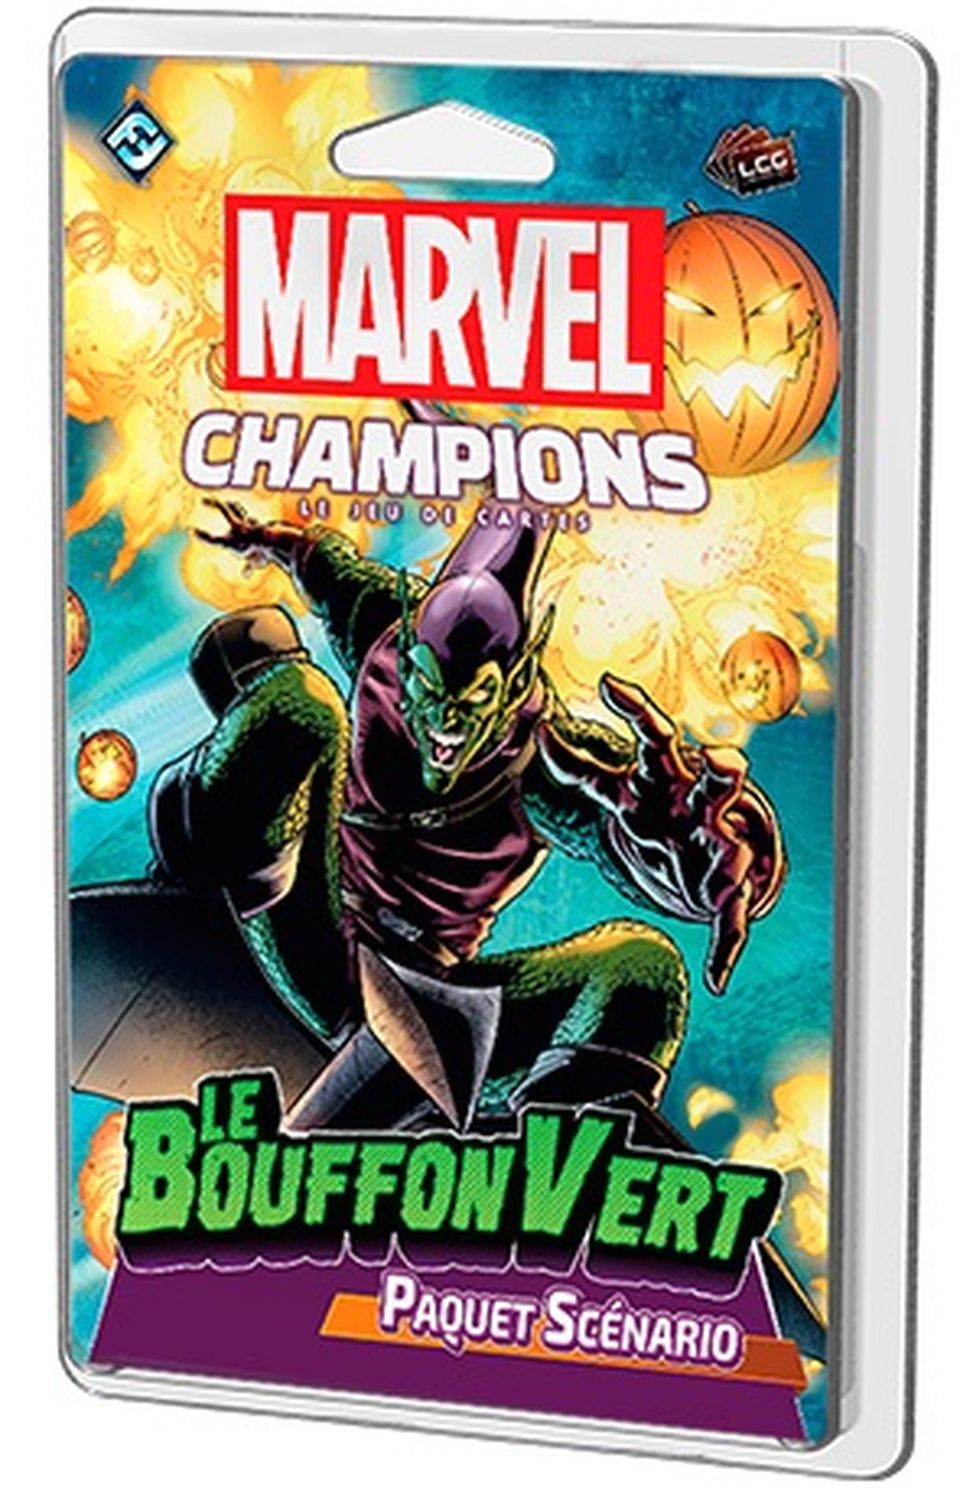 Marvel Champions : Le jeu de cartes - Le Bouffon Vert (Paquet Scénario) image